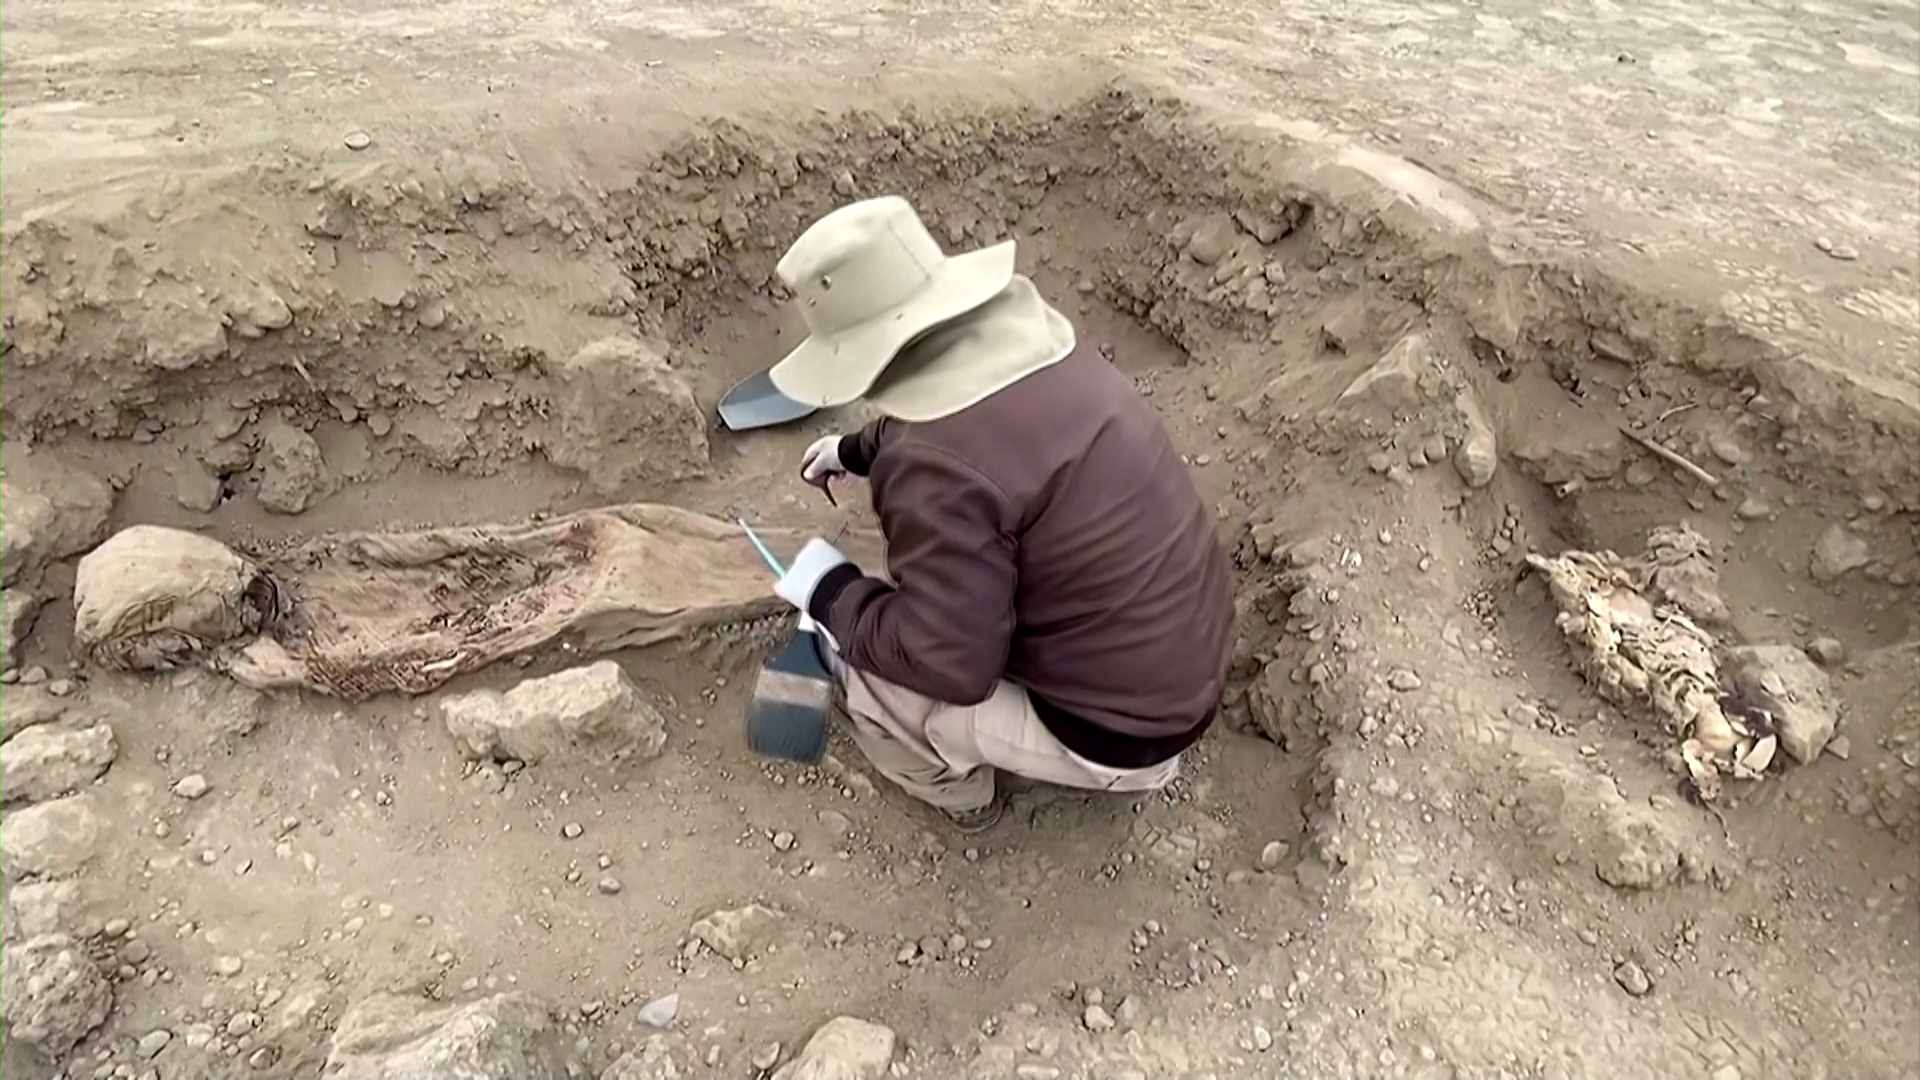 Восемь мумий колониальной эпохи нашли археологи в Перу